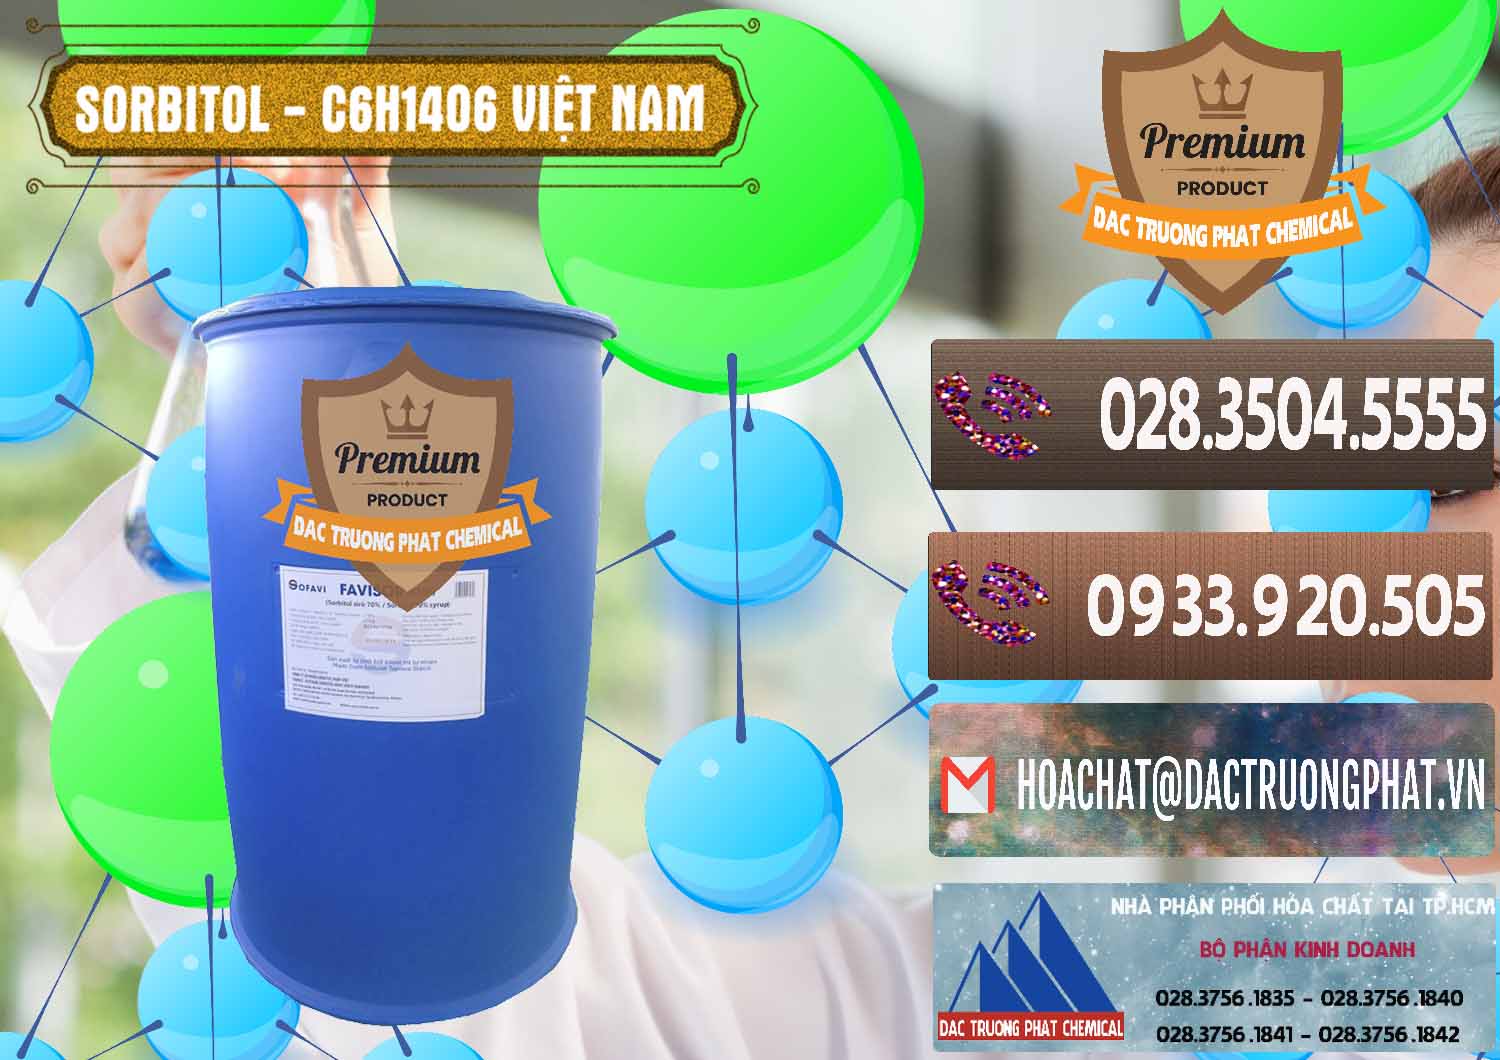 Cung cấp - bán Sorbitol - C6H14O6 Lỏng 70% Food Grade Việt Nam - 0438 - Nơi cung cấp _ phân phối hóa chất tại TP.HCM - hoachatviet.net